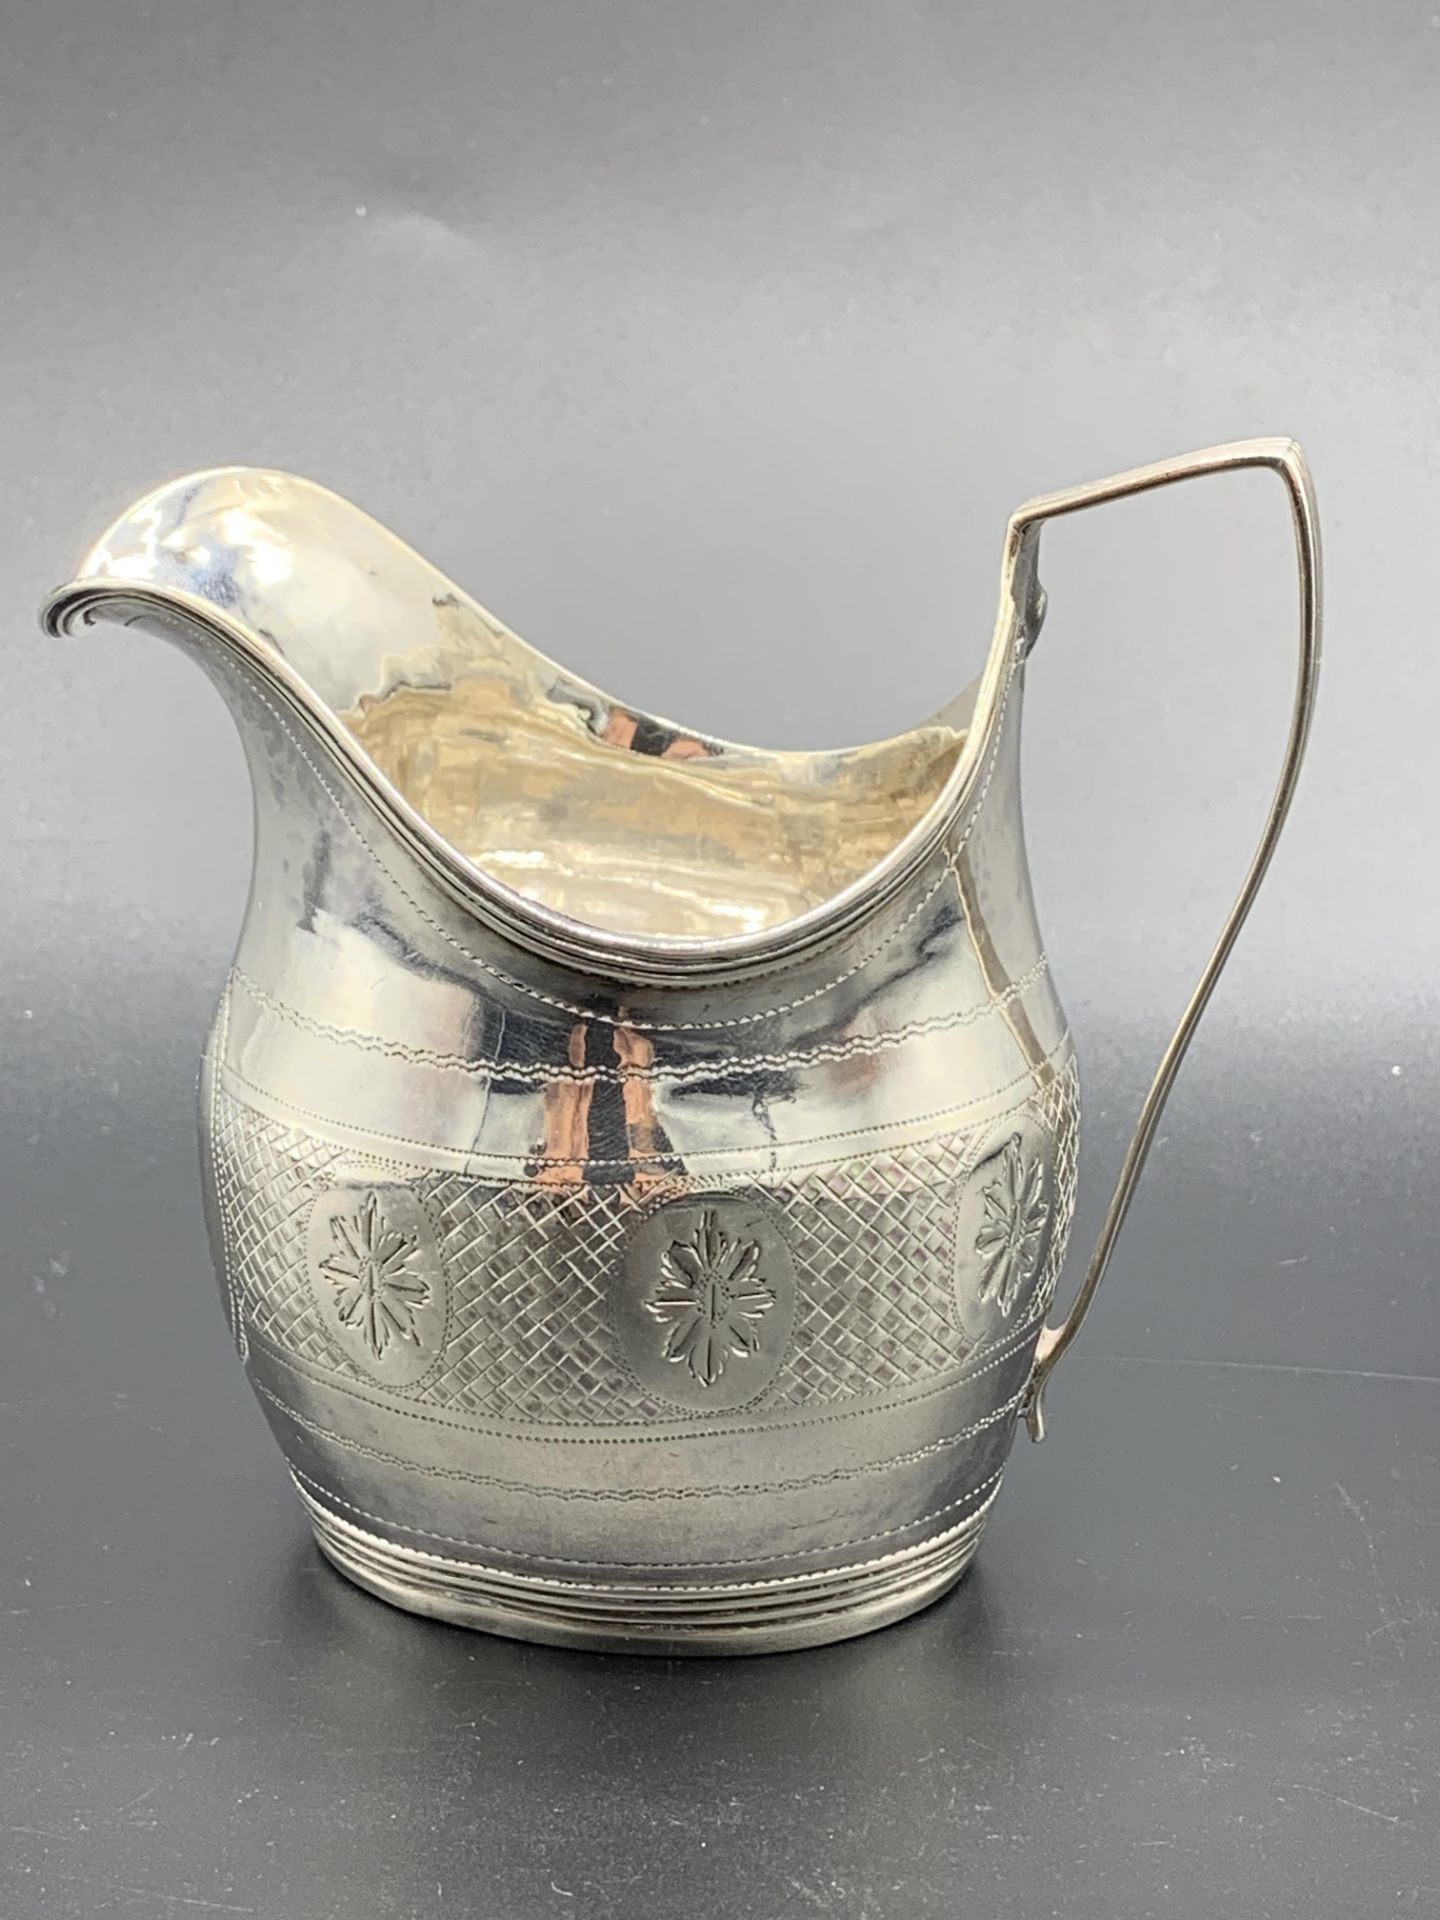 Silver milk jug, 1803 - Image 2 of 3